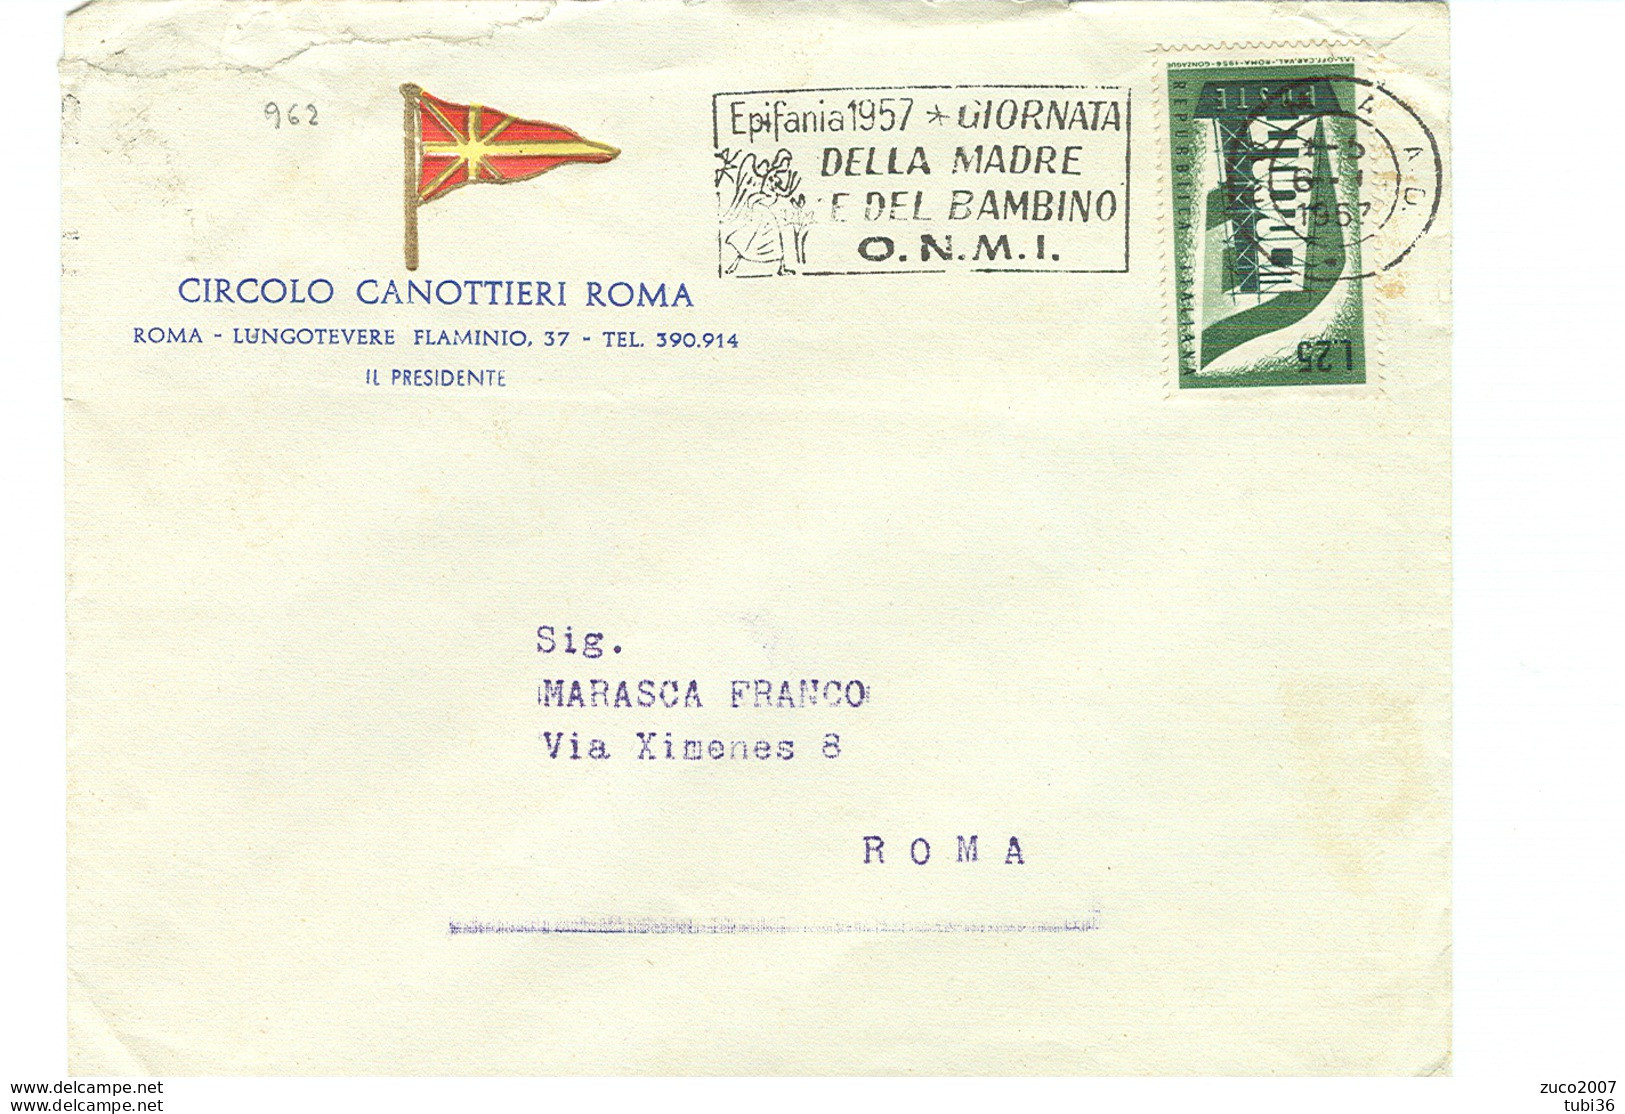 EPIFANIA 1957, GIORNATA DELLA MADRE E DEL BAMBINO- O.N.M.I.- TIMBRO POSTE ROMA TARGHETTA,1957,CIRCOLO CANOTTIERI,ROMA, - Fête Des Mères